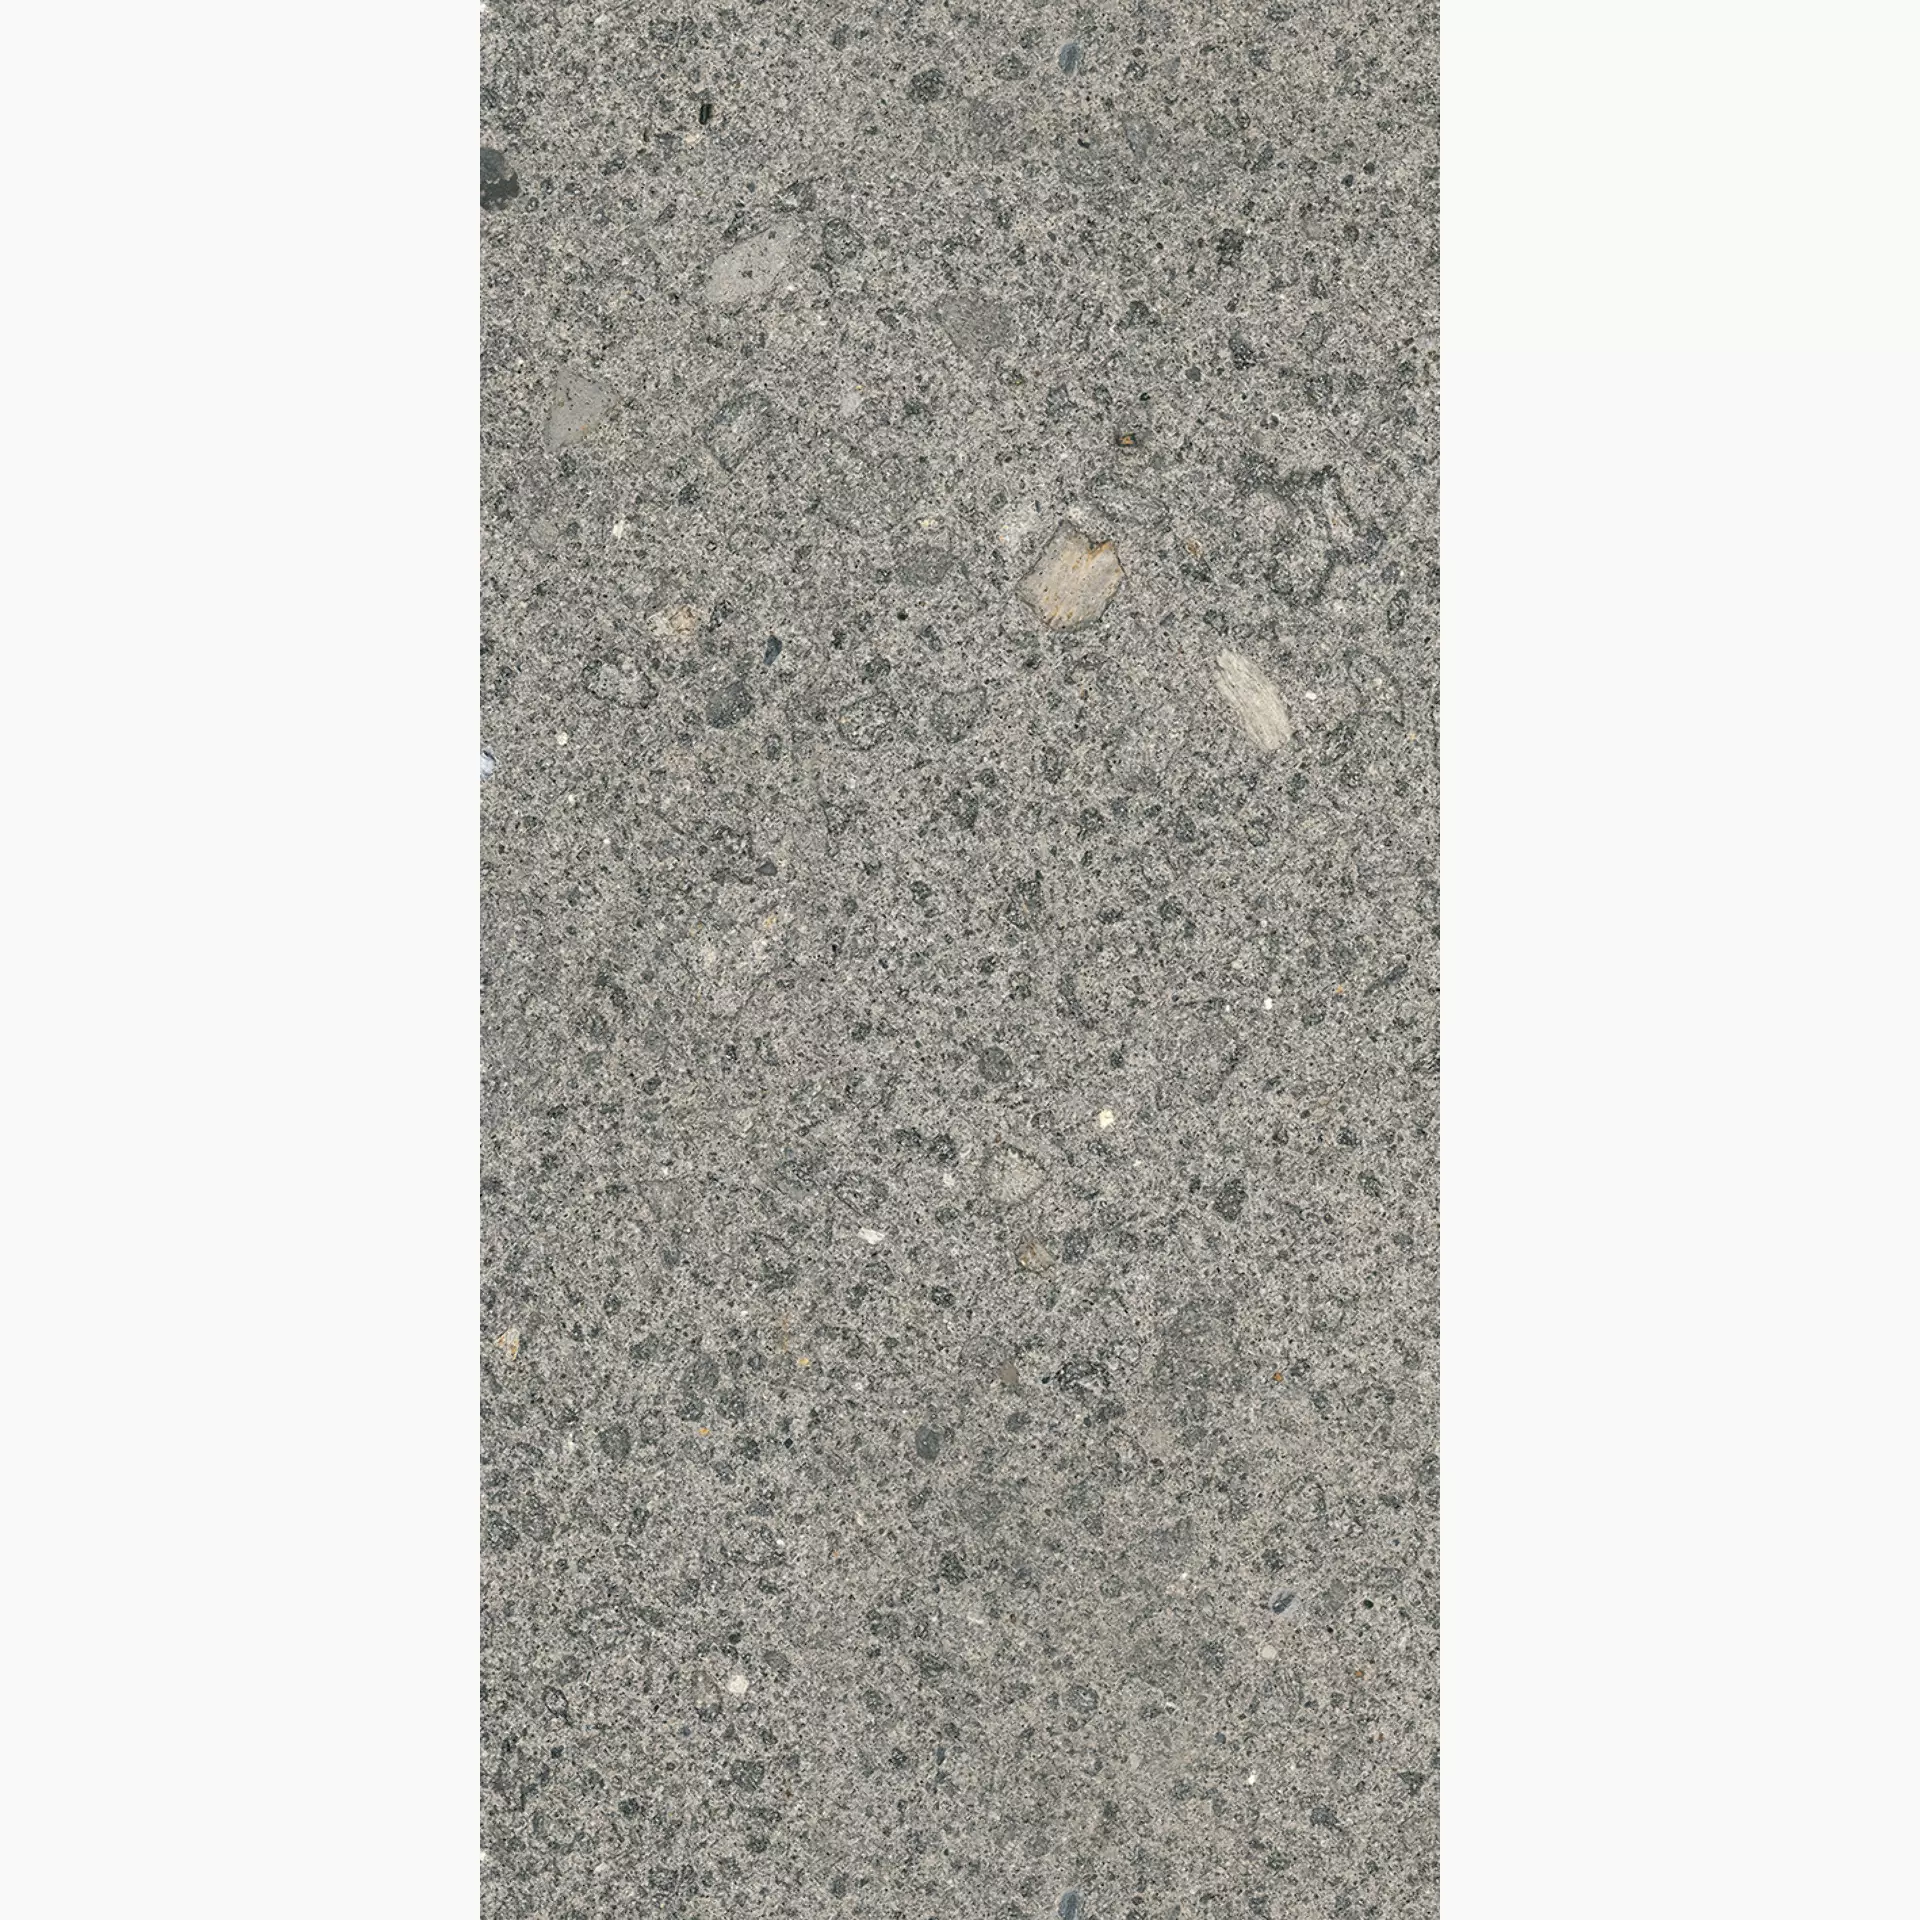 Wandfliese,Bodenfliese Villeroy & Boch Code 2 Stone Matt Stone 2730-SN60 matt 60x120cm rektifiziert 10mm